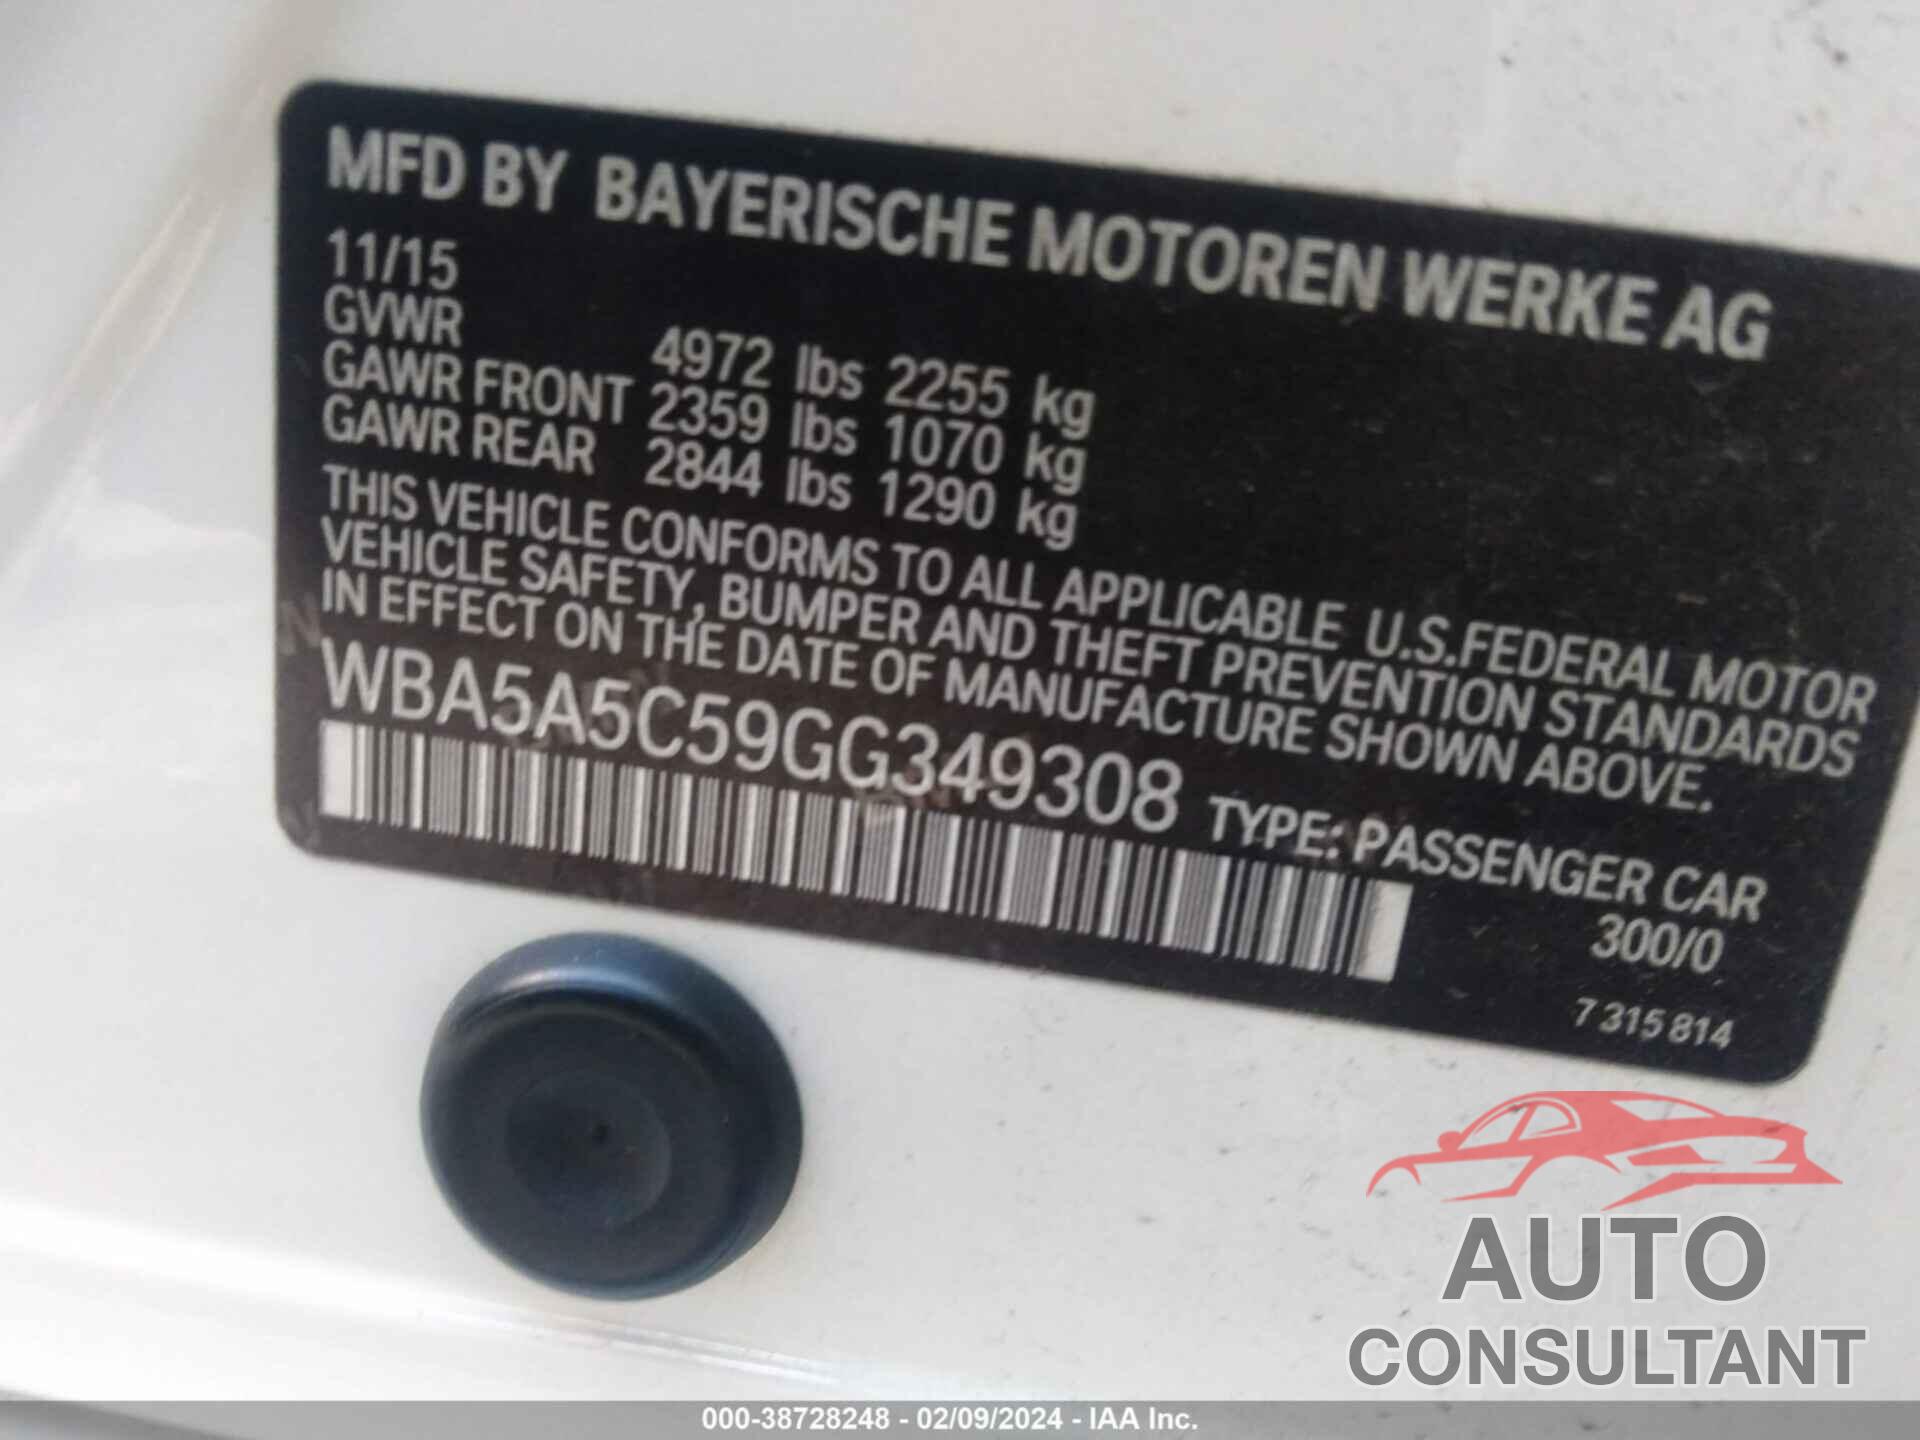 BMW 528I 2016 - WBA5A5C59GG349308